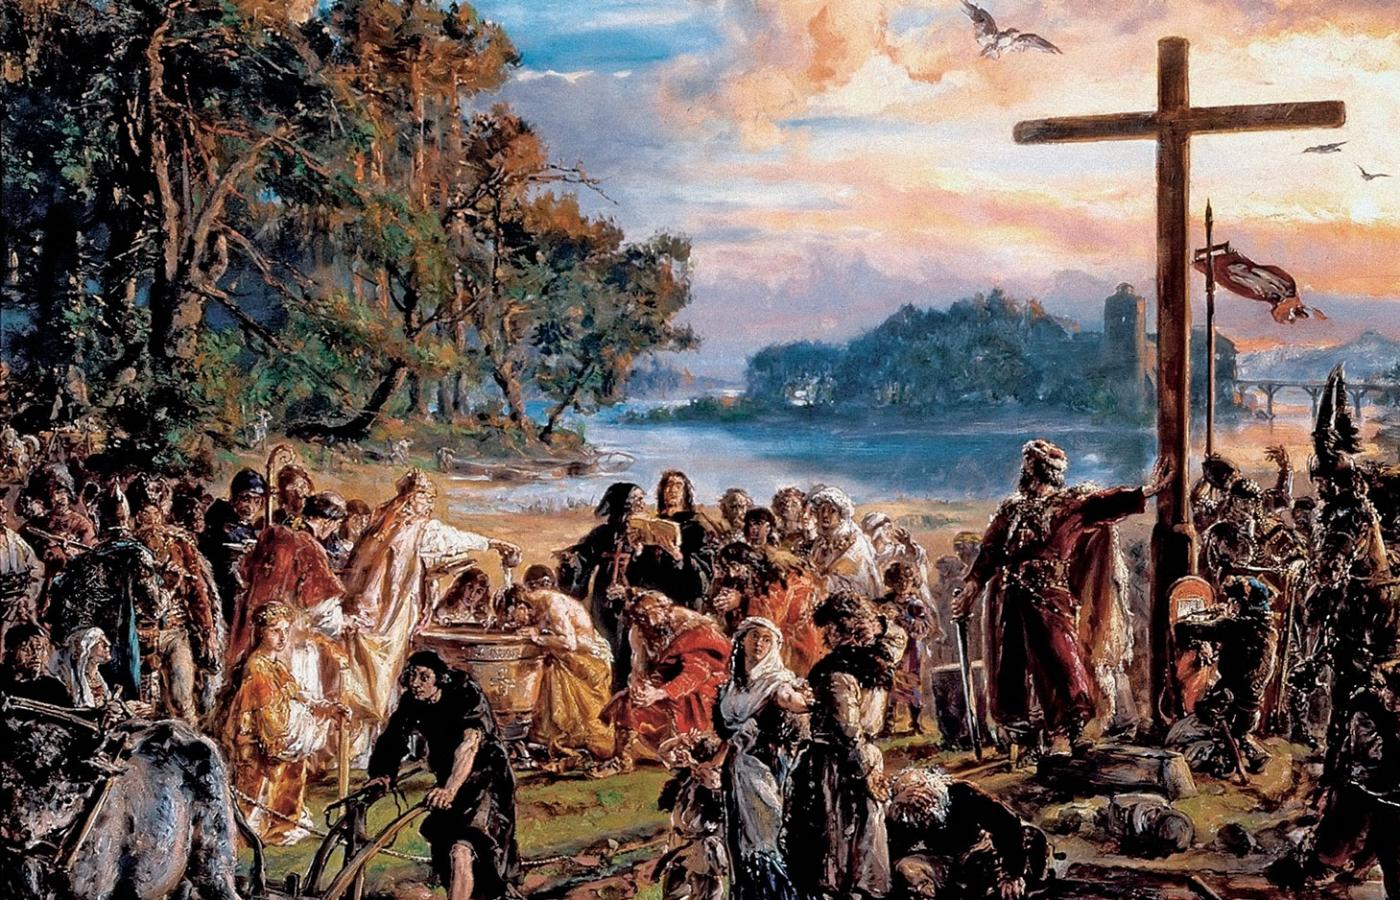 „Zaprowadzenie chrześcijaństwa”, obraz Jana Matejki otwierający cykl „Dzieje cywilizacji w Polsce”, 1889 r.